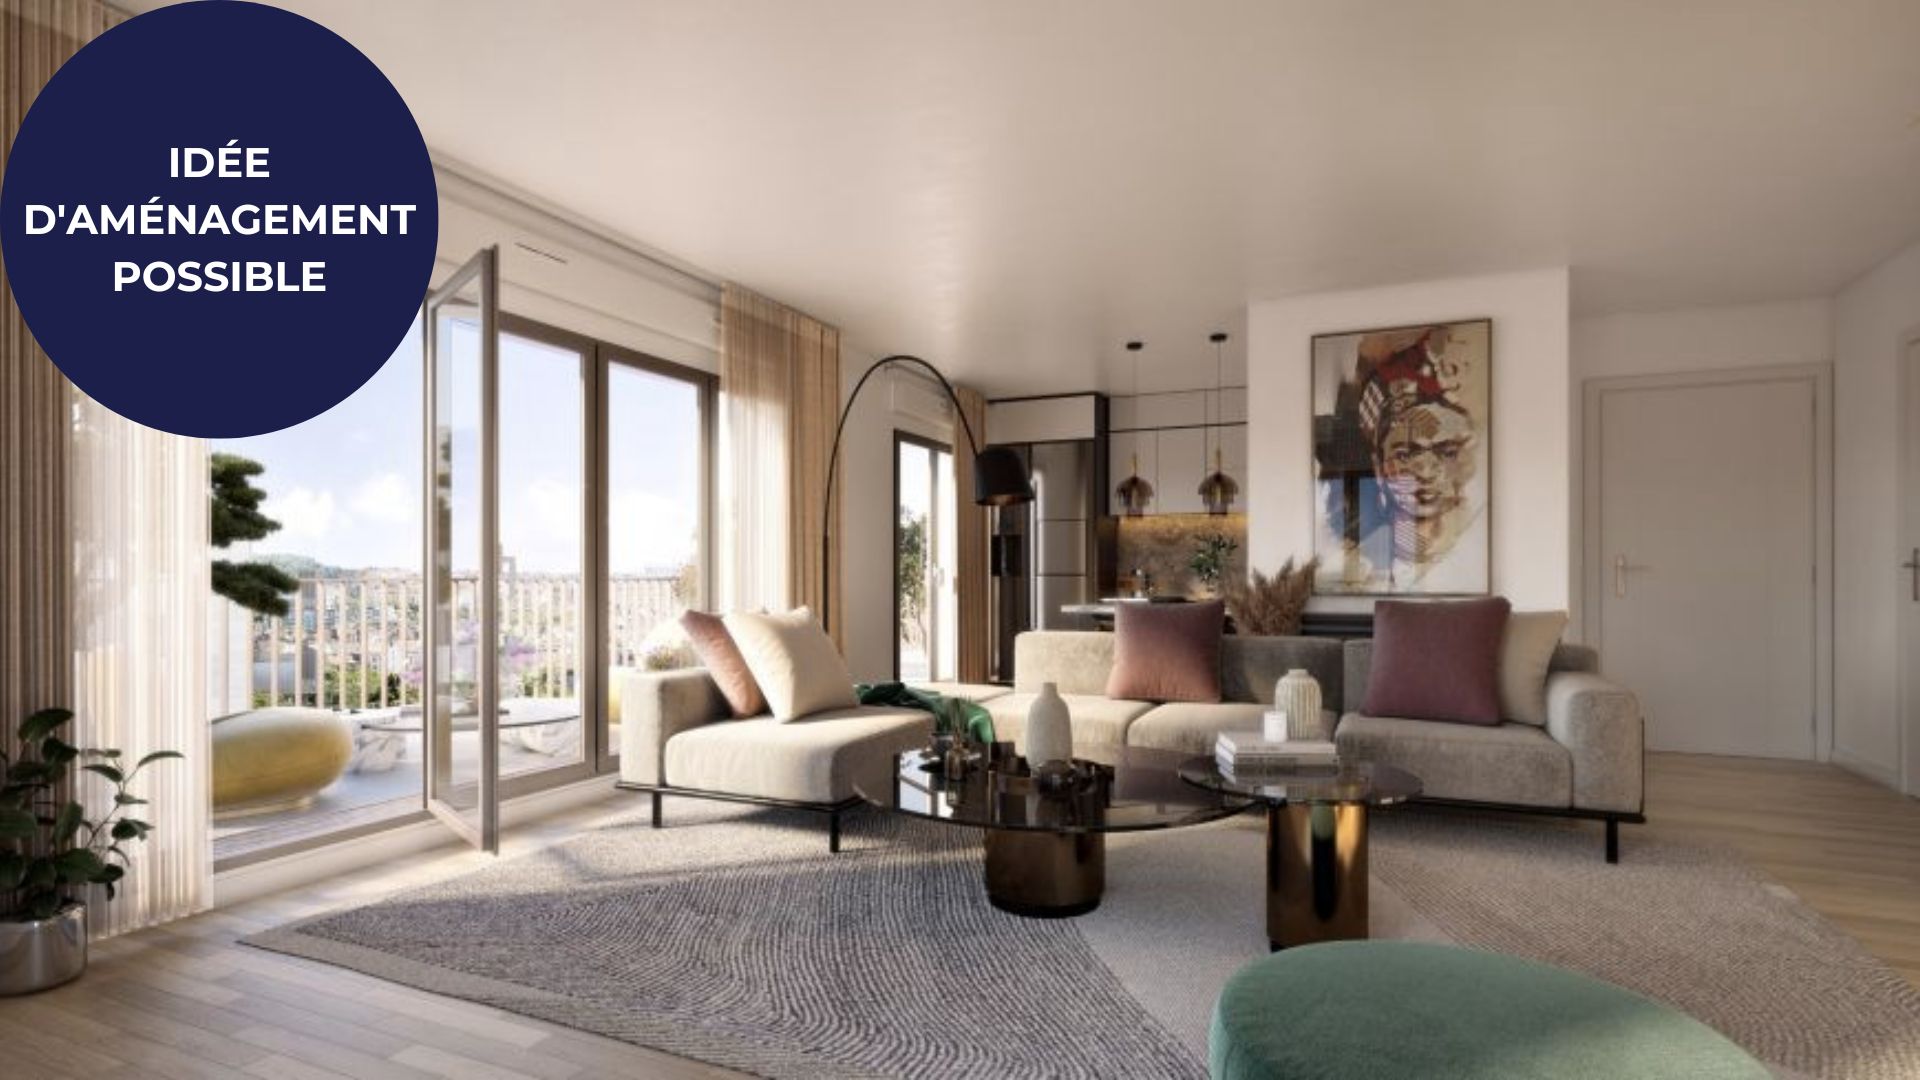 EXCLUSIVITÉ A VENDRE – Appartement T3 standing de 52,92 m² avec terrasse plein sud, à proximité du RER B / RER C